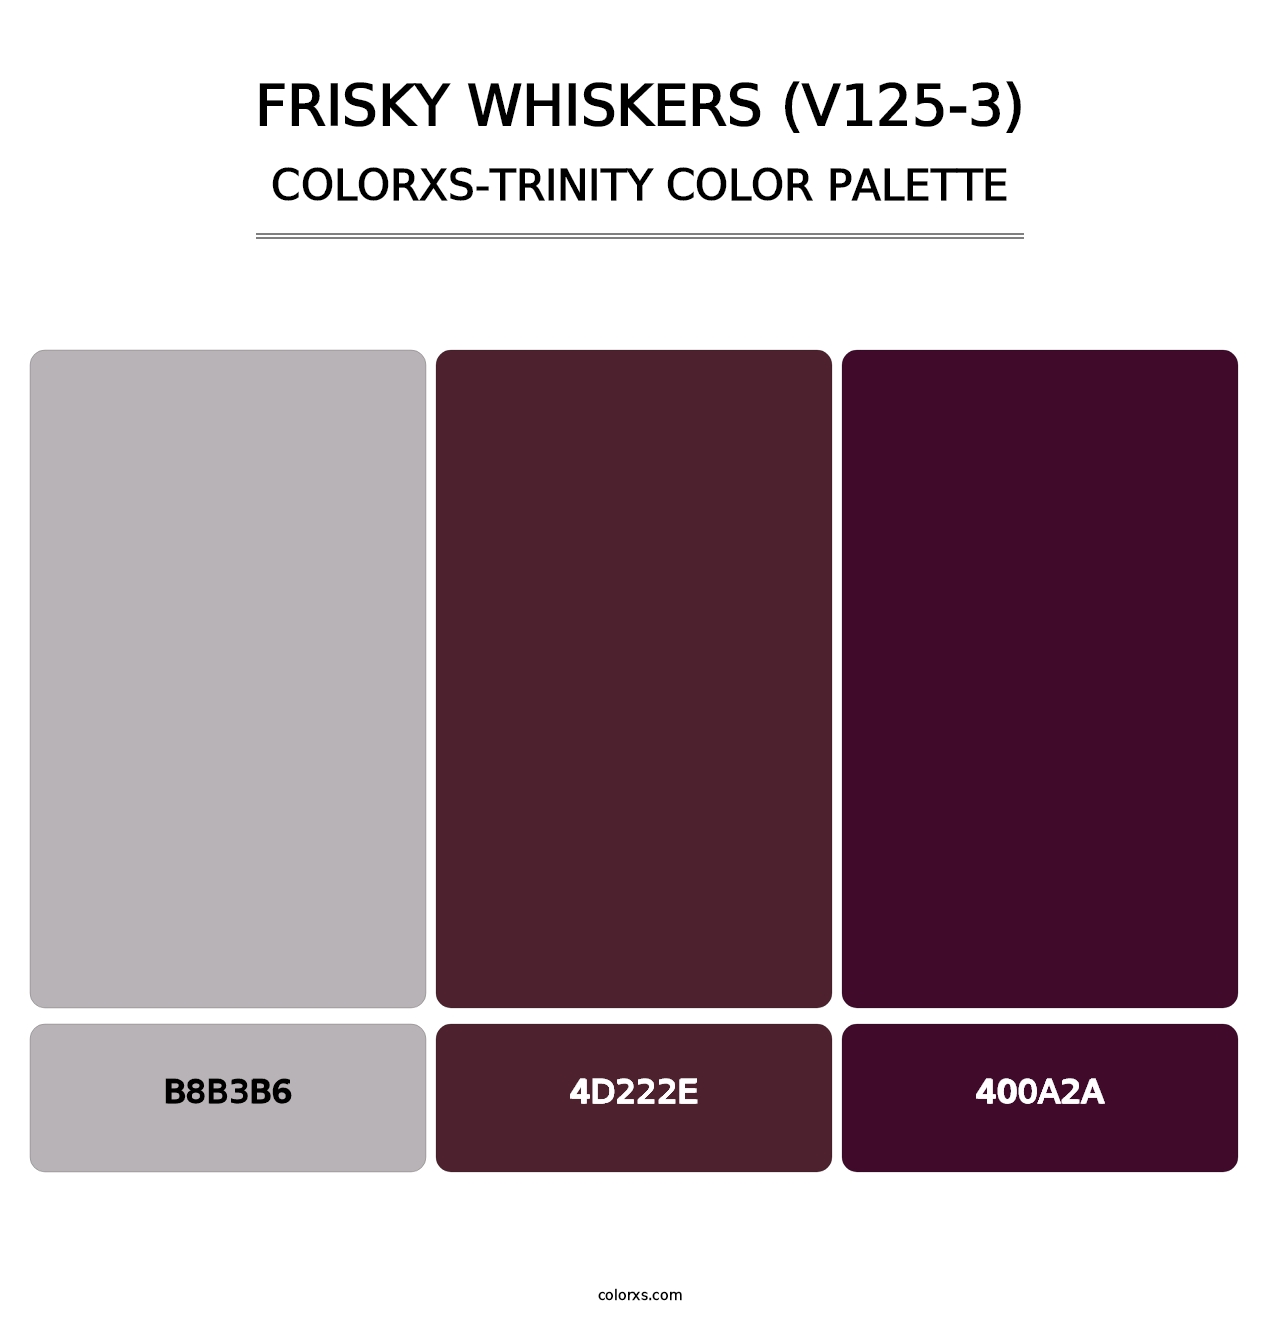 Frisky Whiskers (V125-3) - Colorxs Trinity Palette